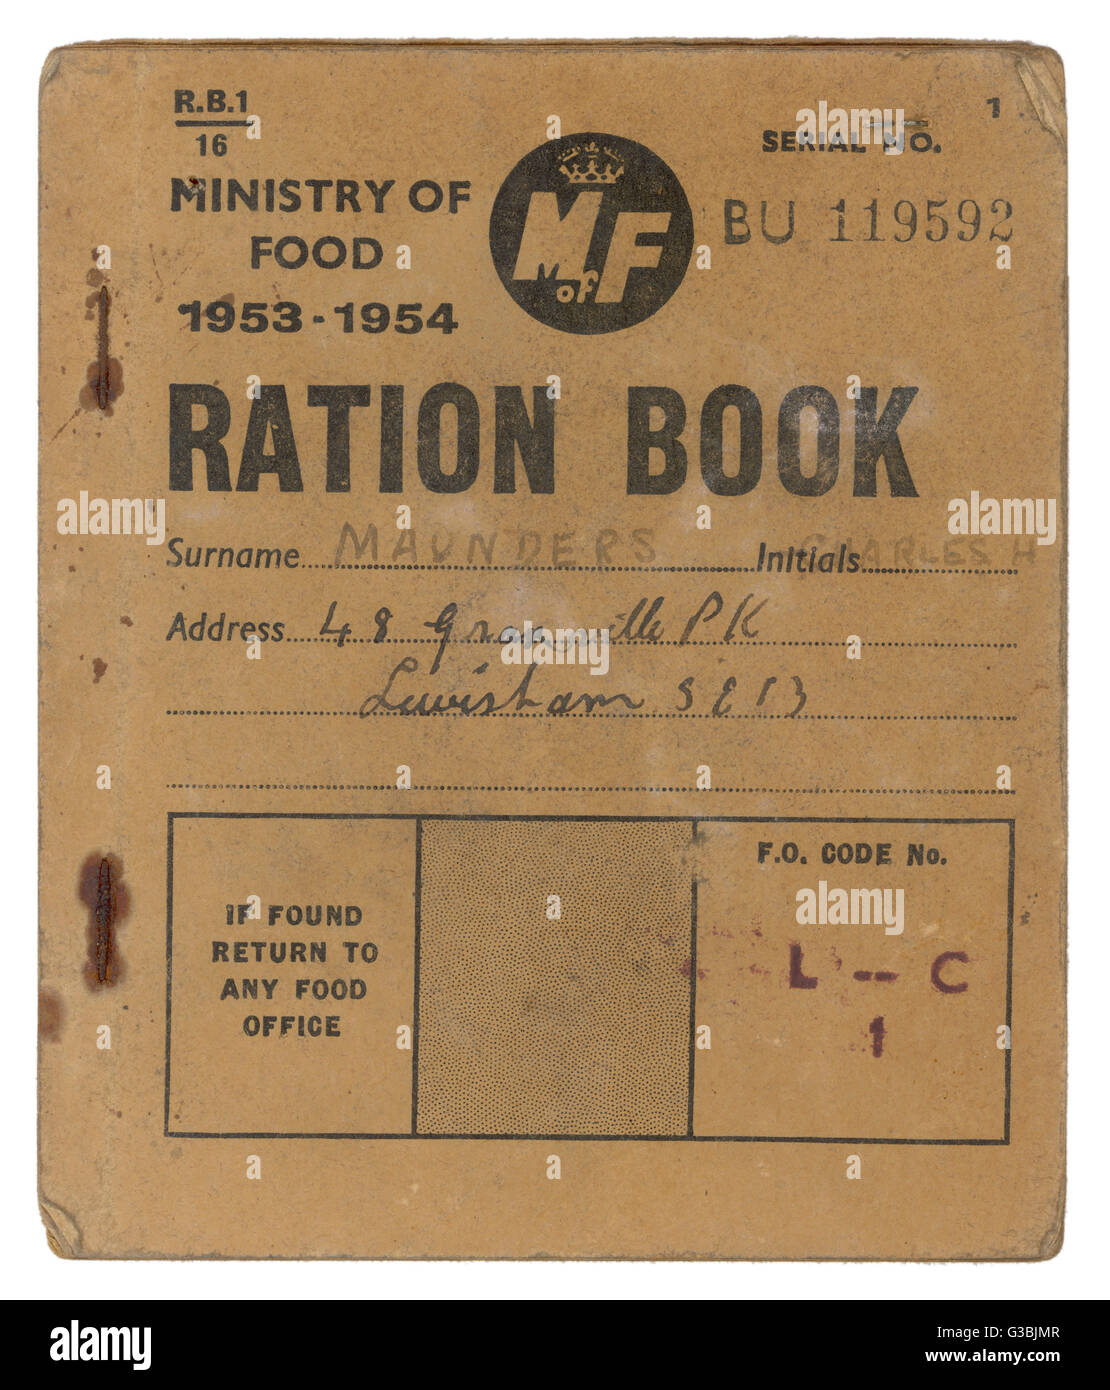 Ein Ministerium für Lebensmittel Ration buchen, beweisen, dass Rationierung dauerte mehrere Jahre nach dem zweiten Weltkrieg 1945 endete in Großbritannien.      Datum: 1953-1954 Stockfoto